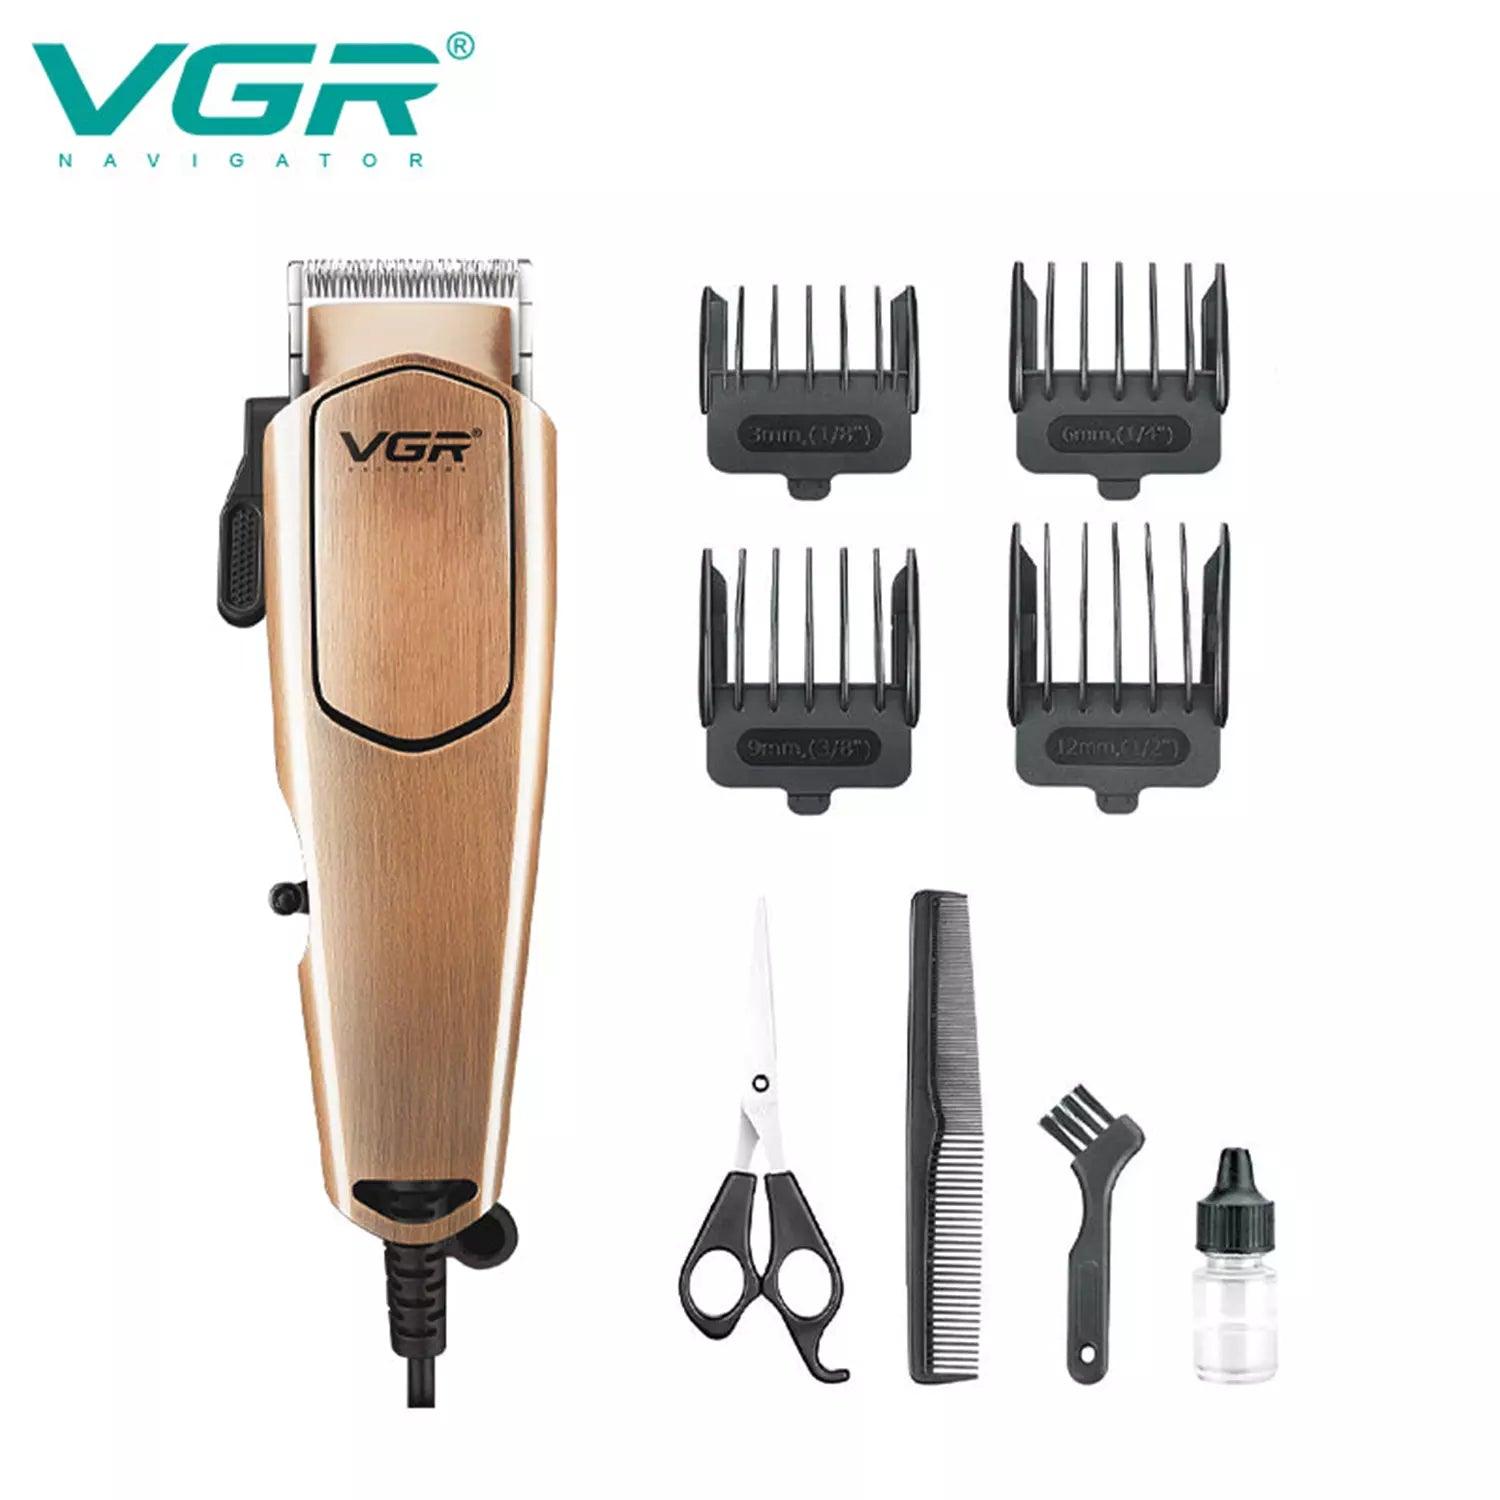 VGR V-131 Hair Clipper For Men, Brown